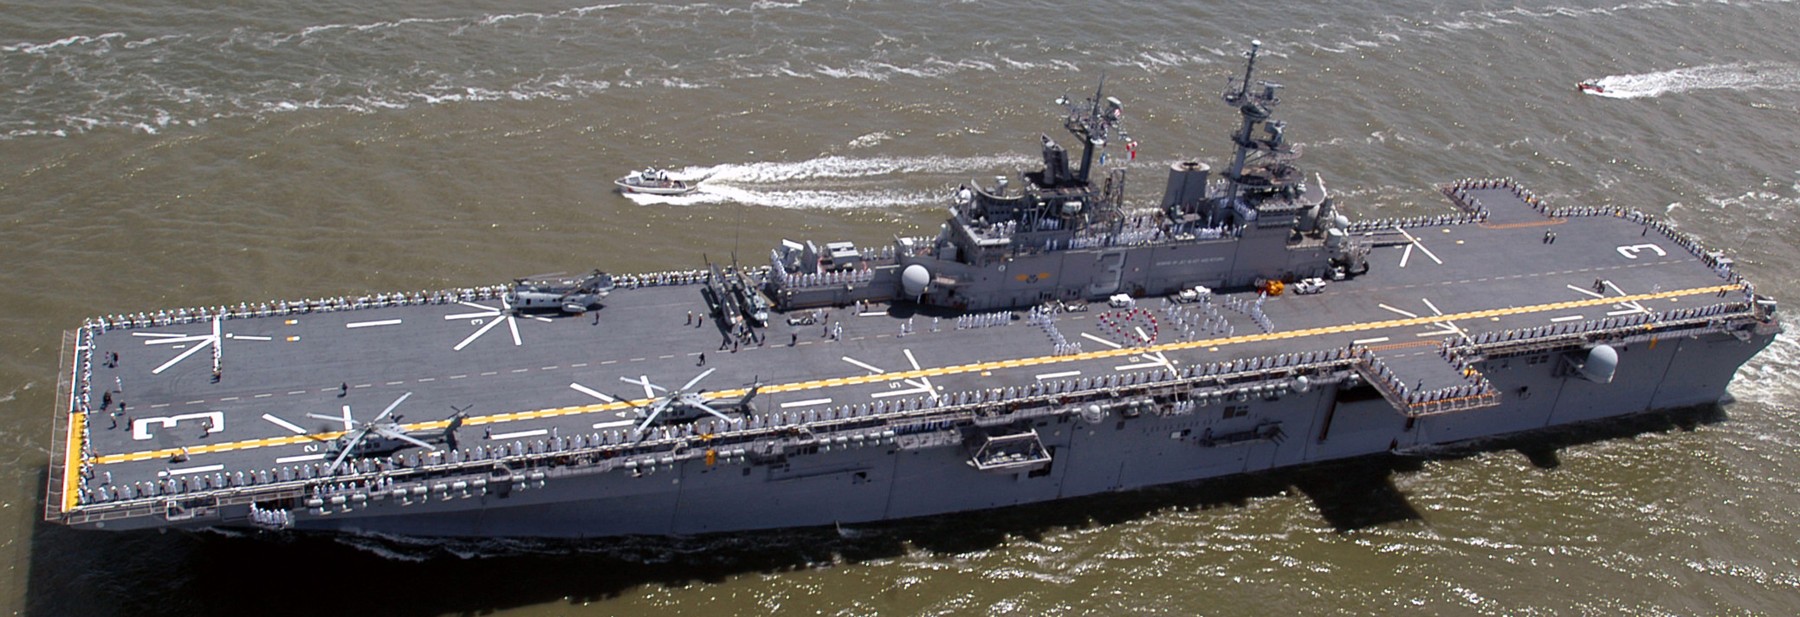 lhd-3 uss kearsarge wasp class amphibious assault ship landing dock us navy new york 57